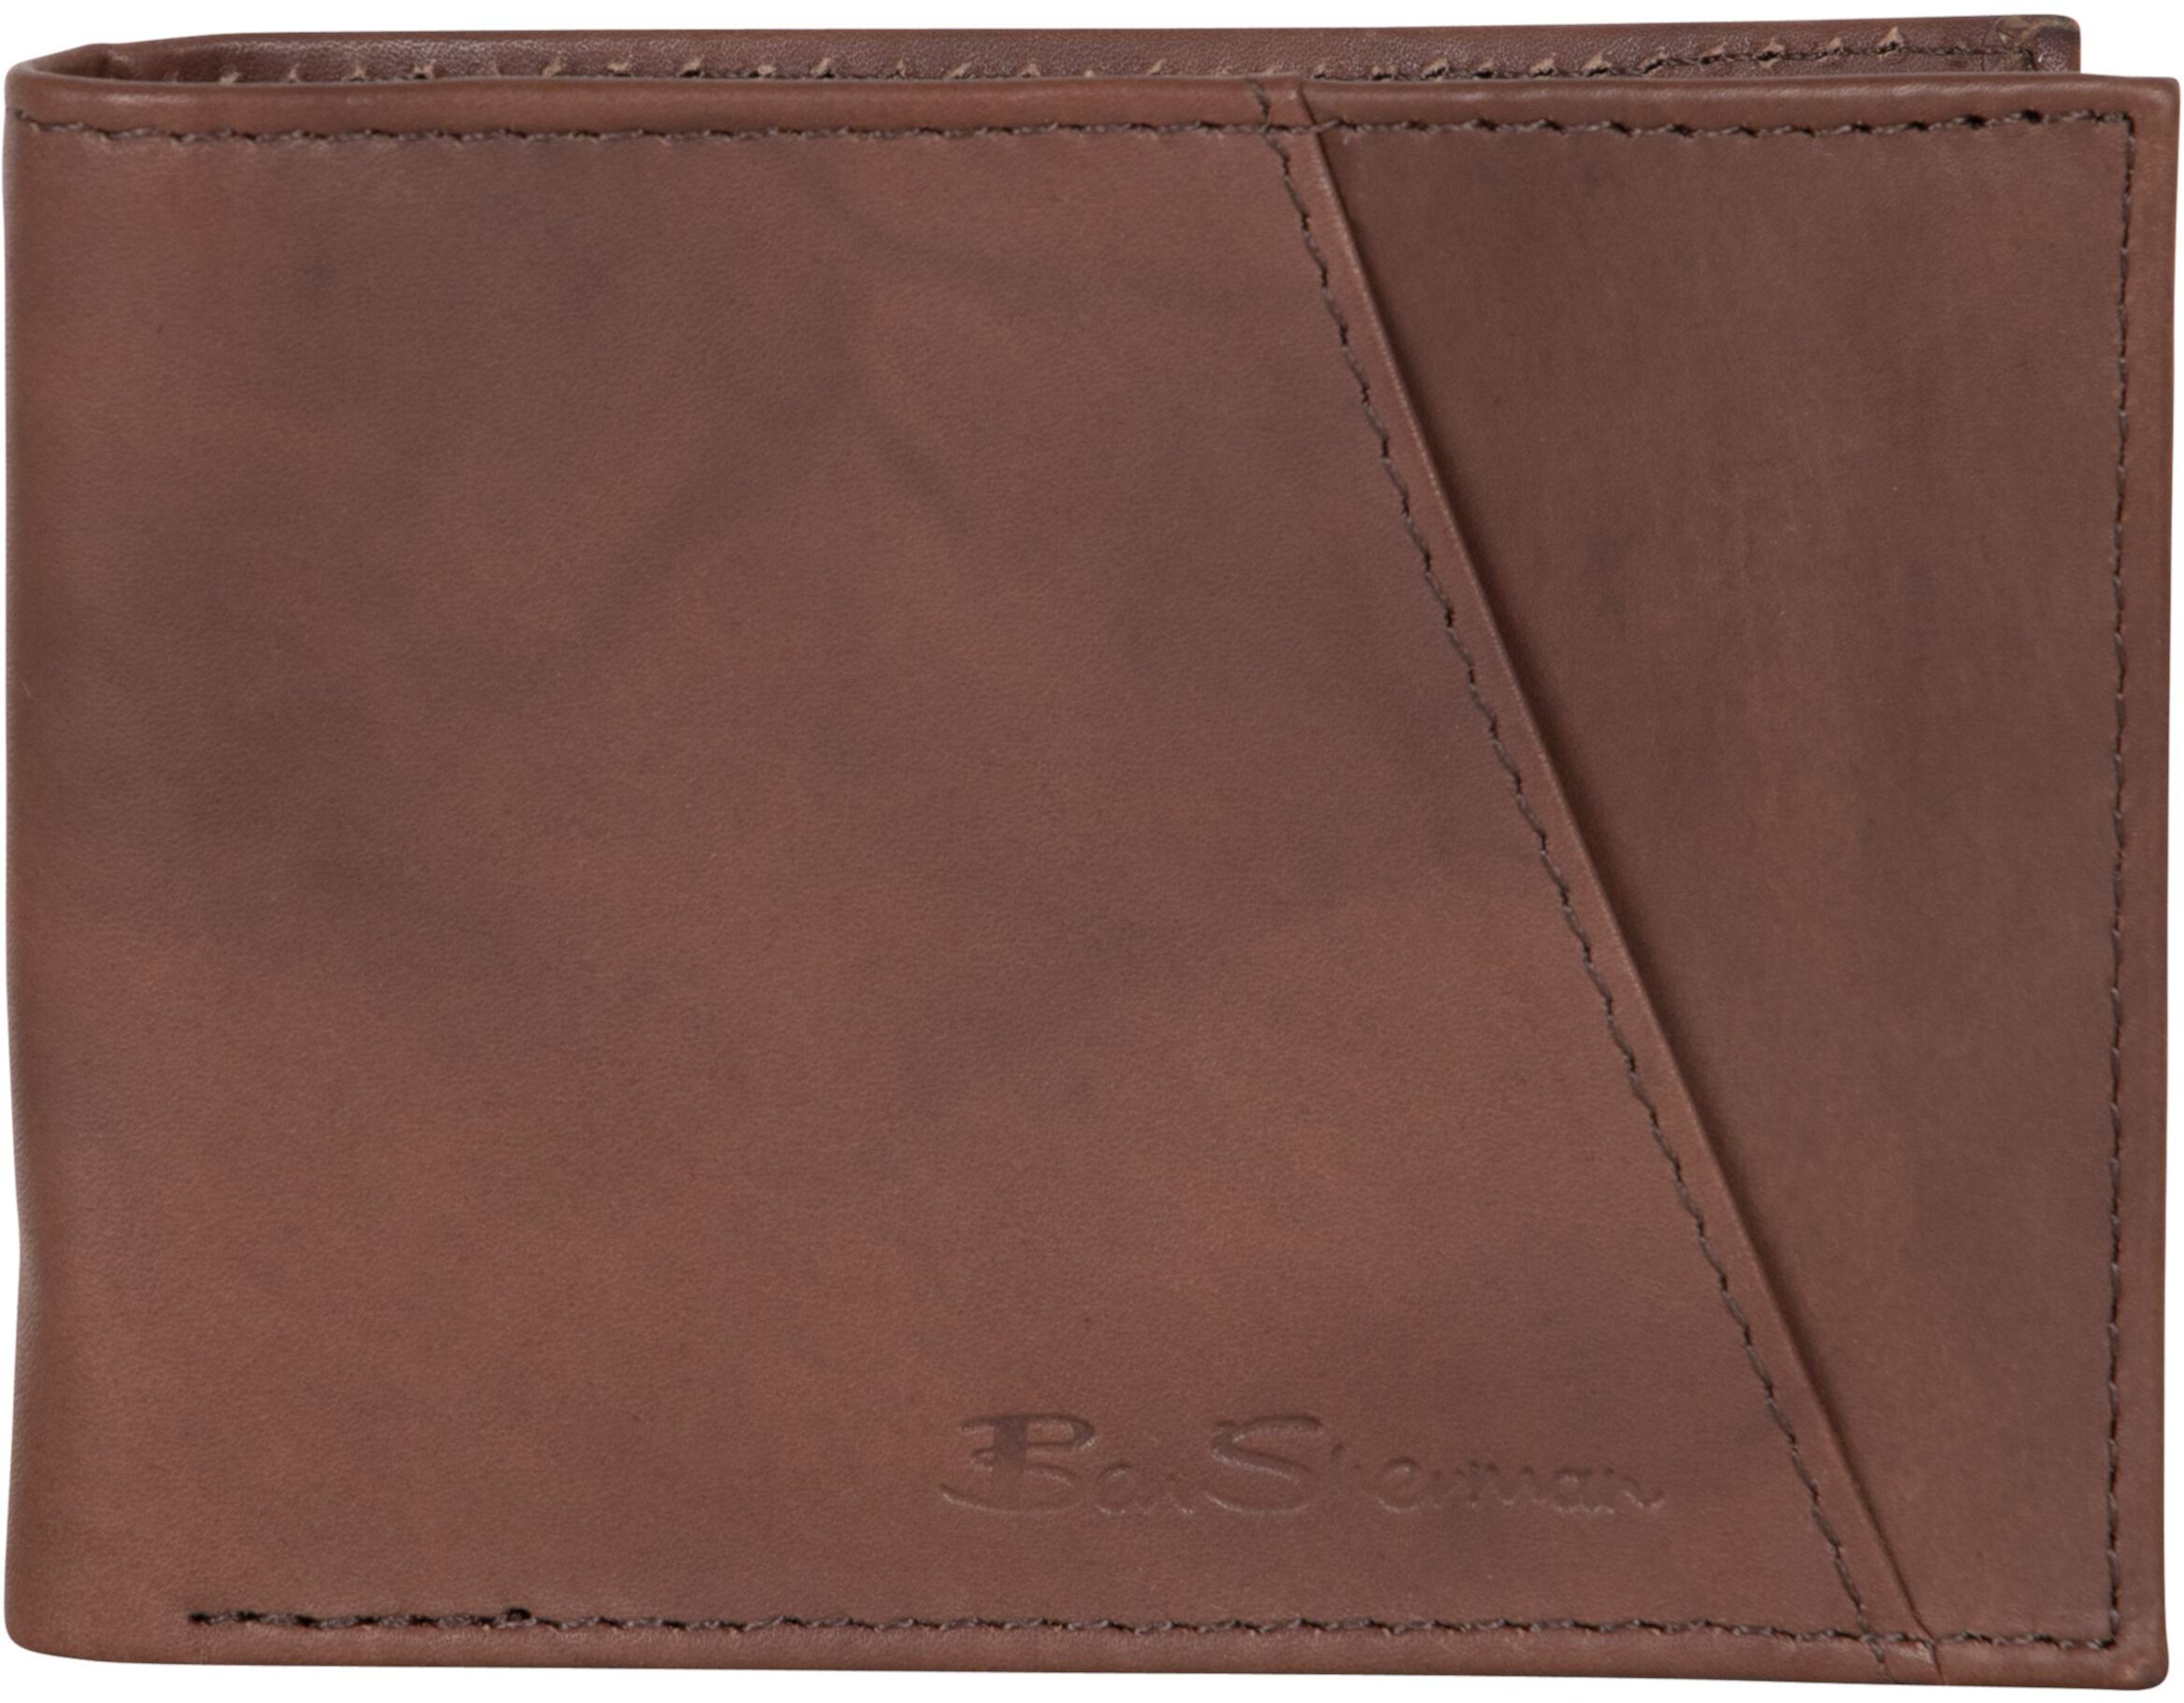 Цельнозернистый мраморный хрустальный кожаный бумажник с защитой от краж и двойным складыванием с 5 карманами и внешним слотом для карт Ben Sherman